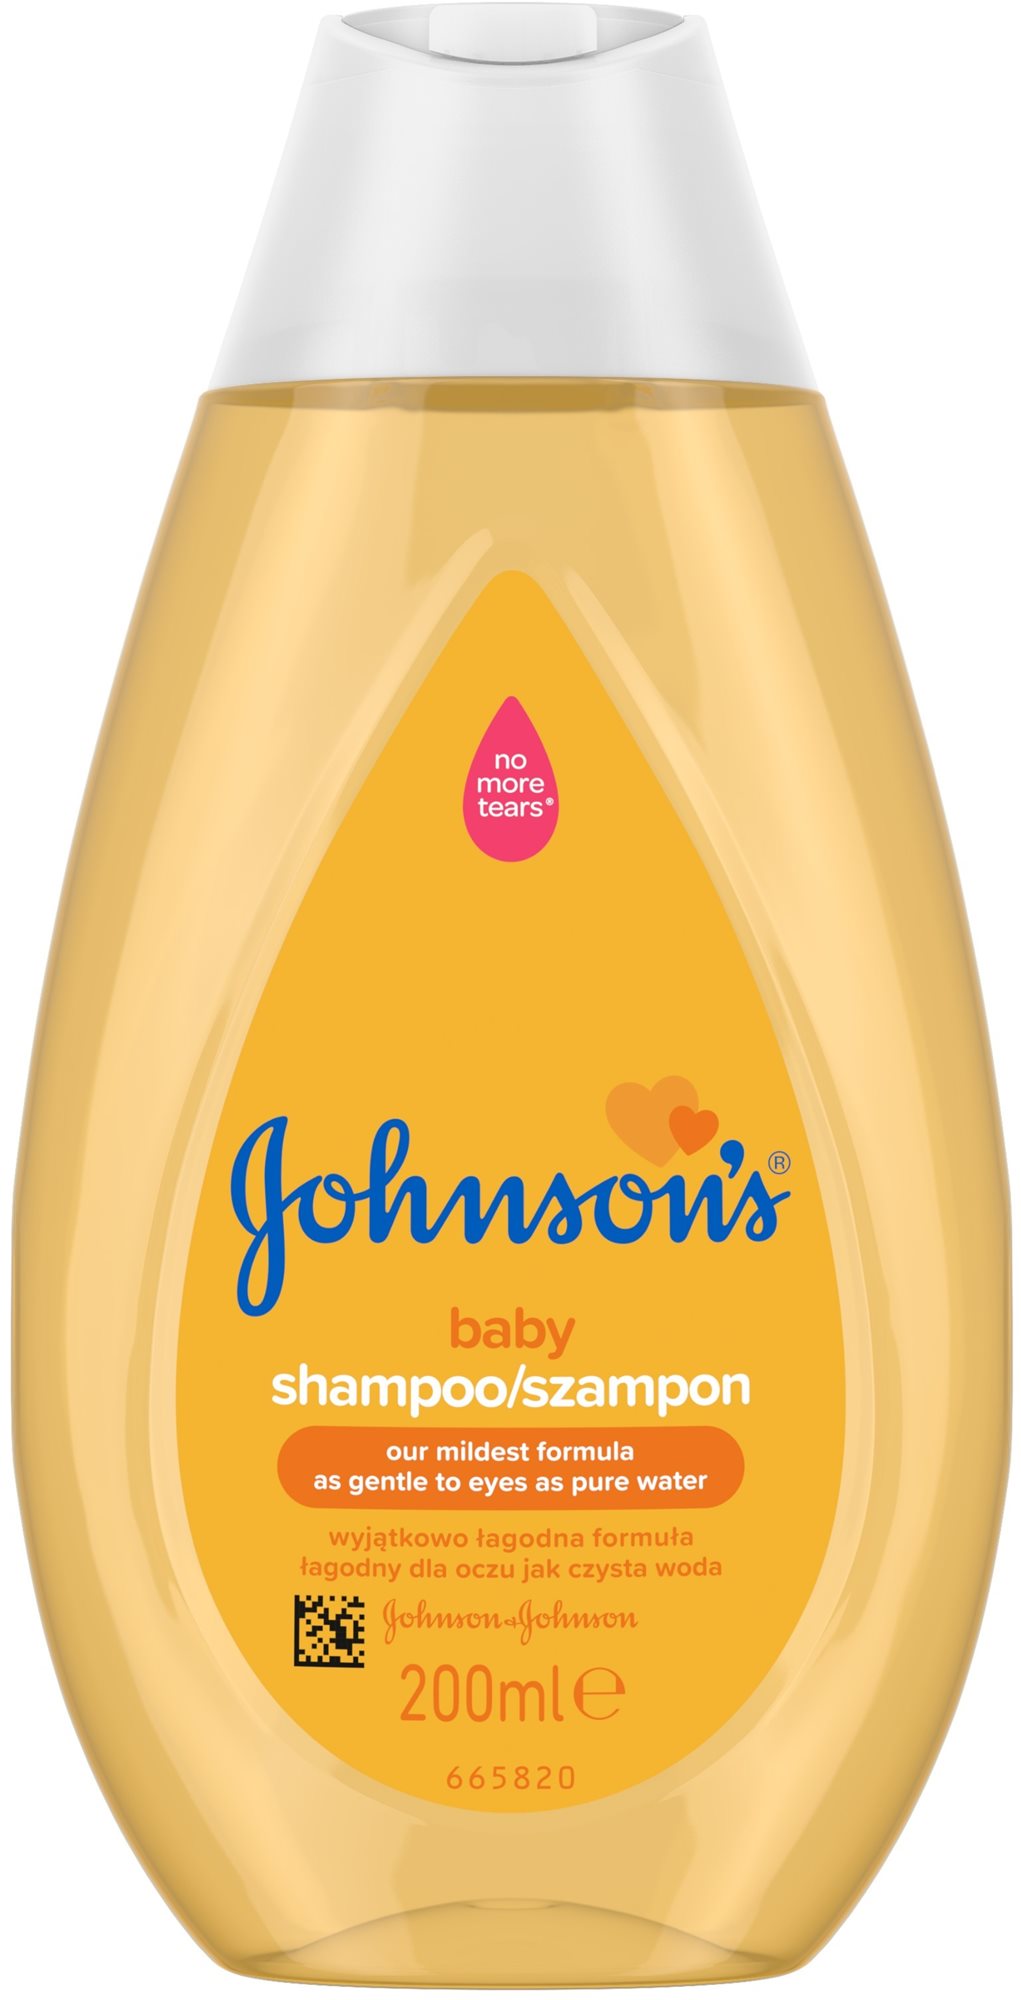 JOHNSON'S BABY sampon 200 ml